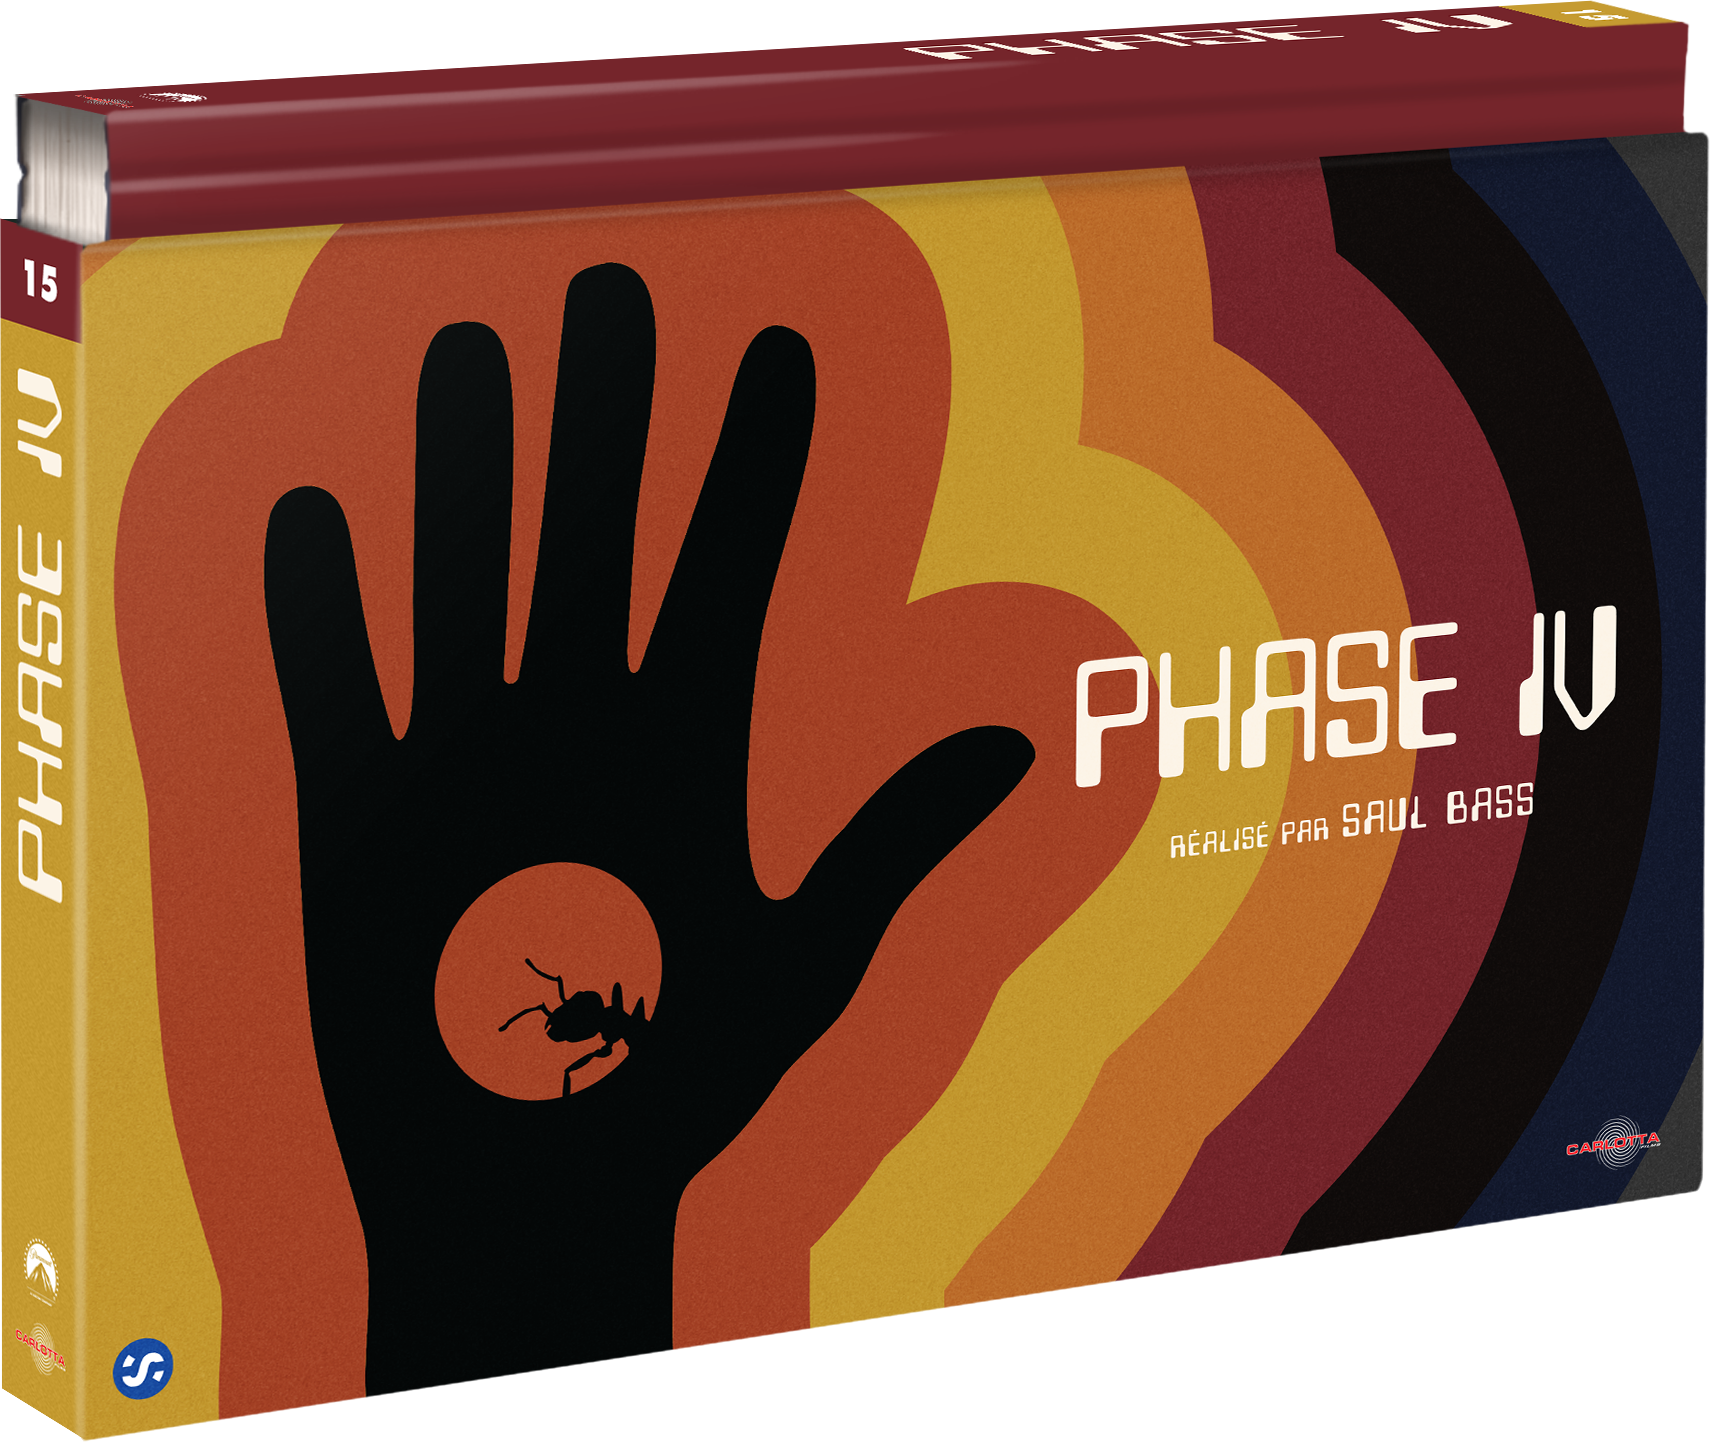 Phase IV - Coffret Ultra Collector 15 - Blu-ray + DVD + Livre - CARLOTTA FILMS - La Boutique